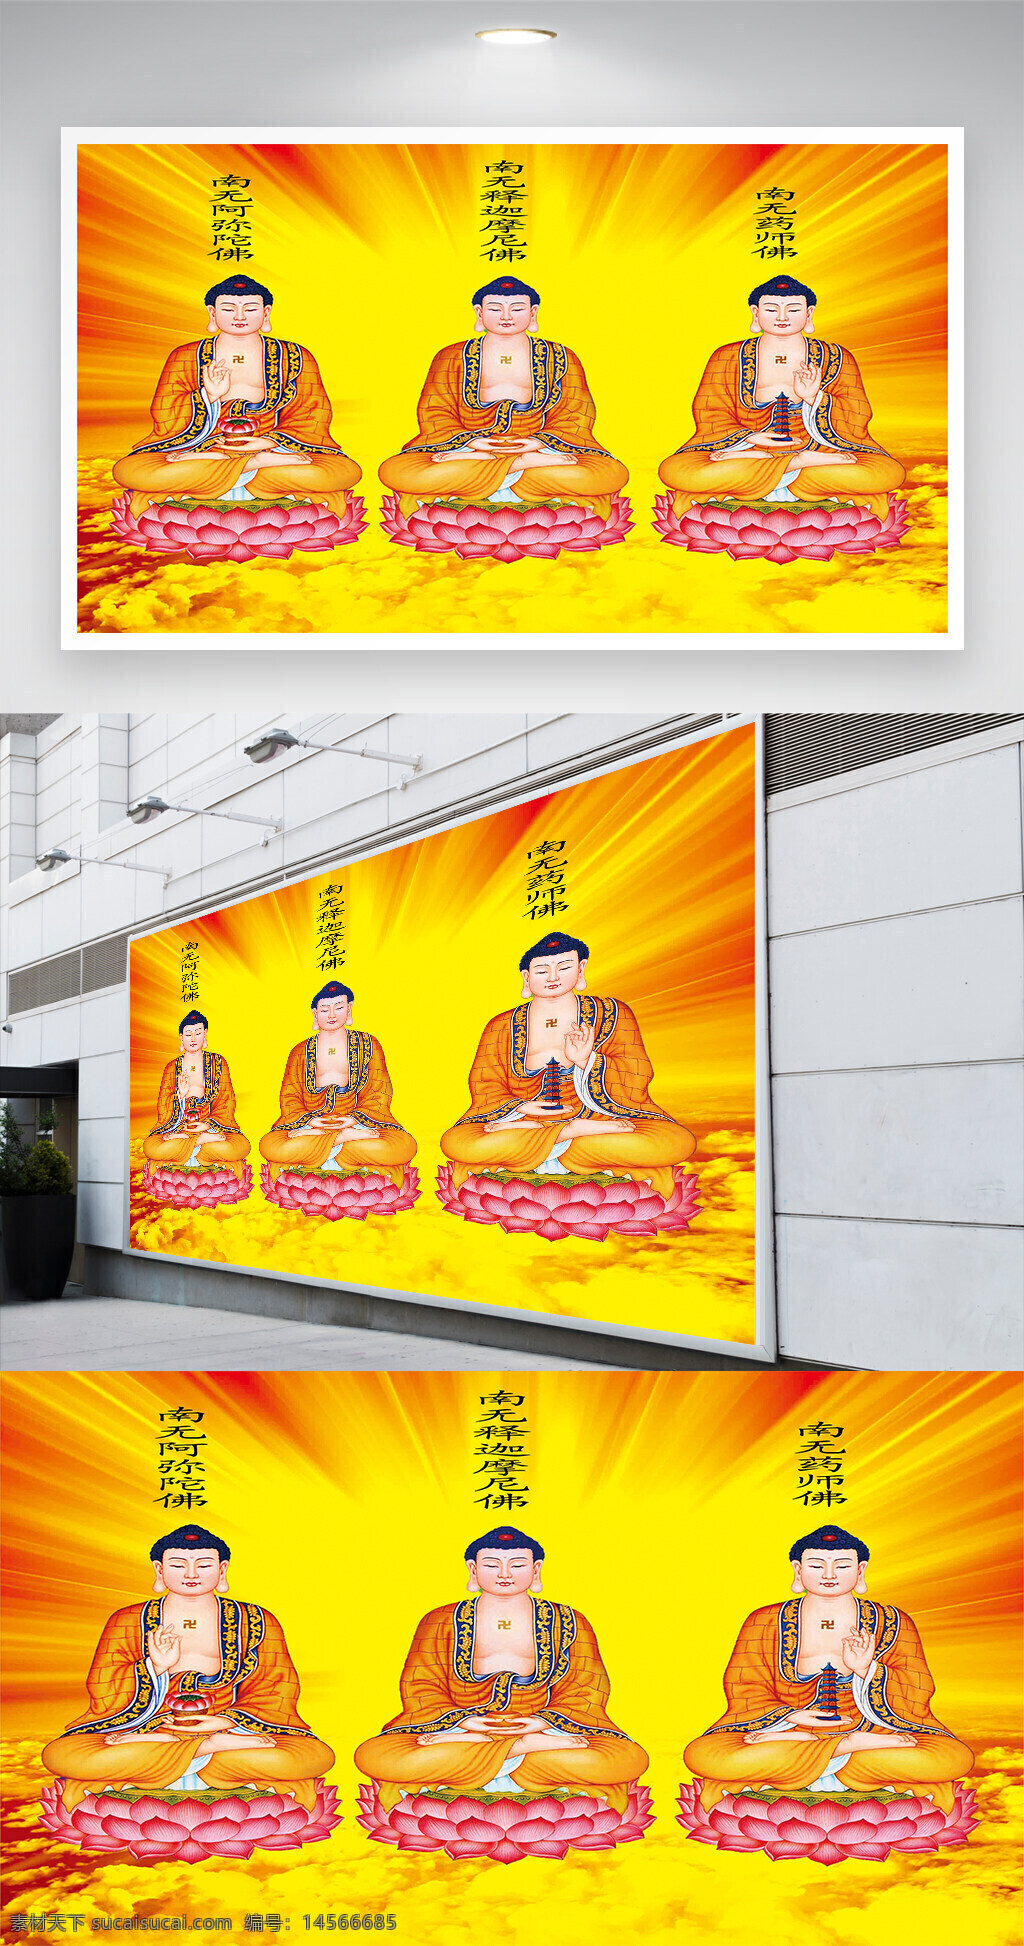 佛教人物背景墙 背景墙 天尊 菩萨 背景 佛教 宗教 神话人物 宗教文化 佛教文化